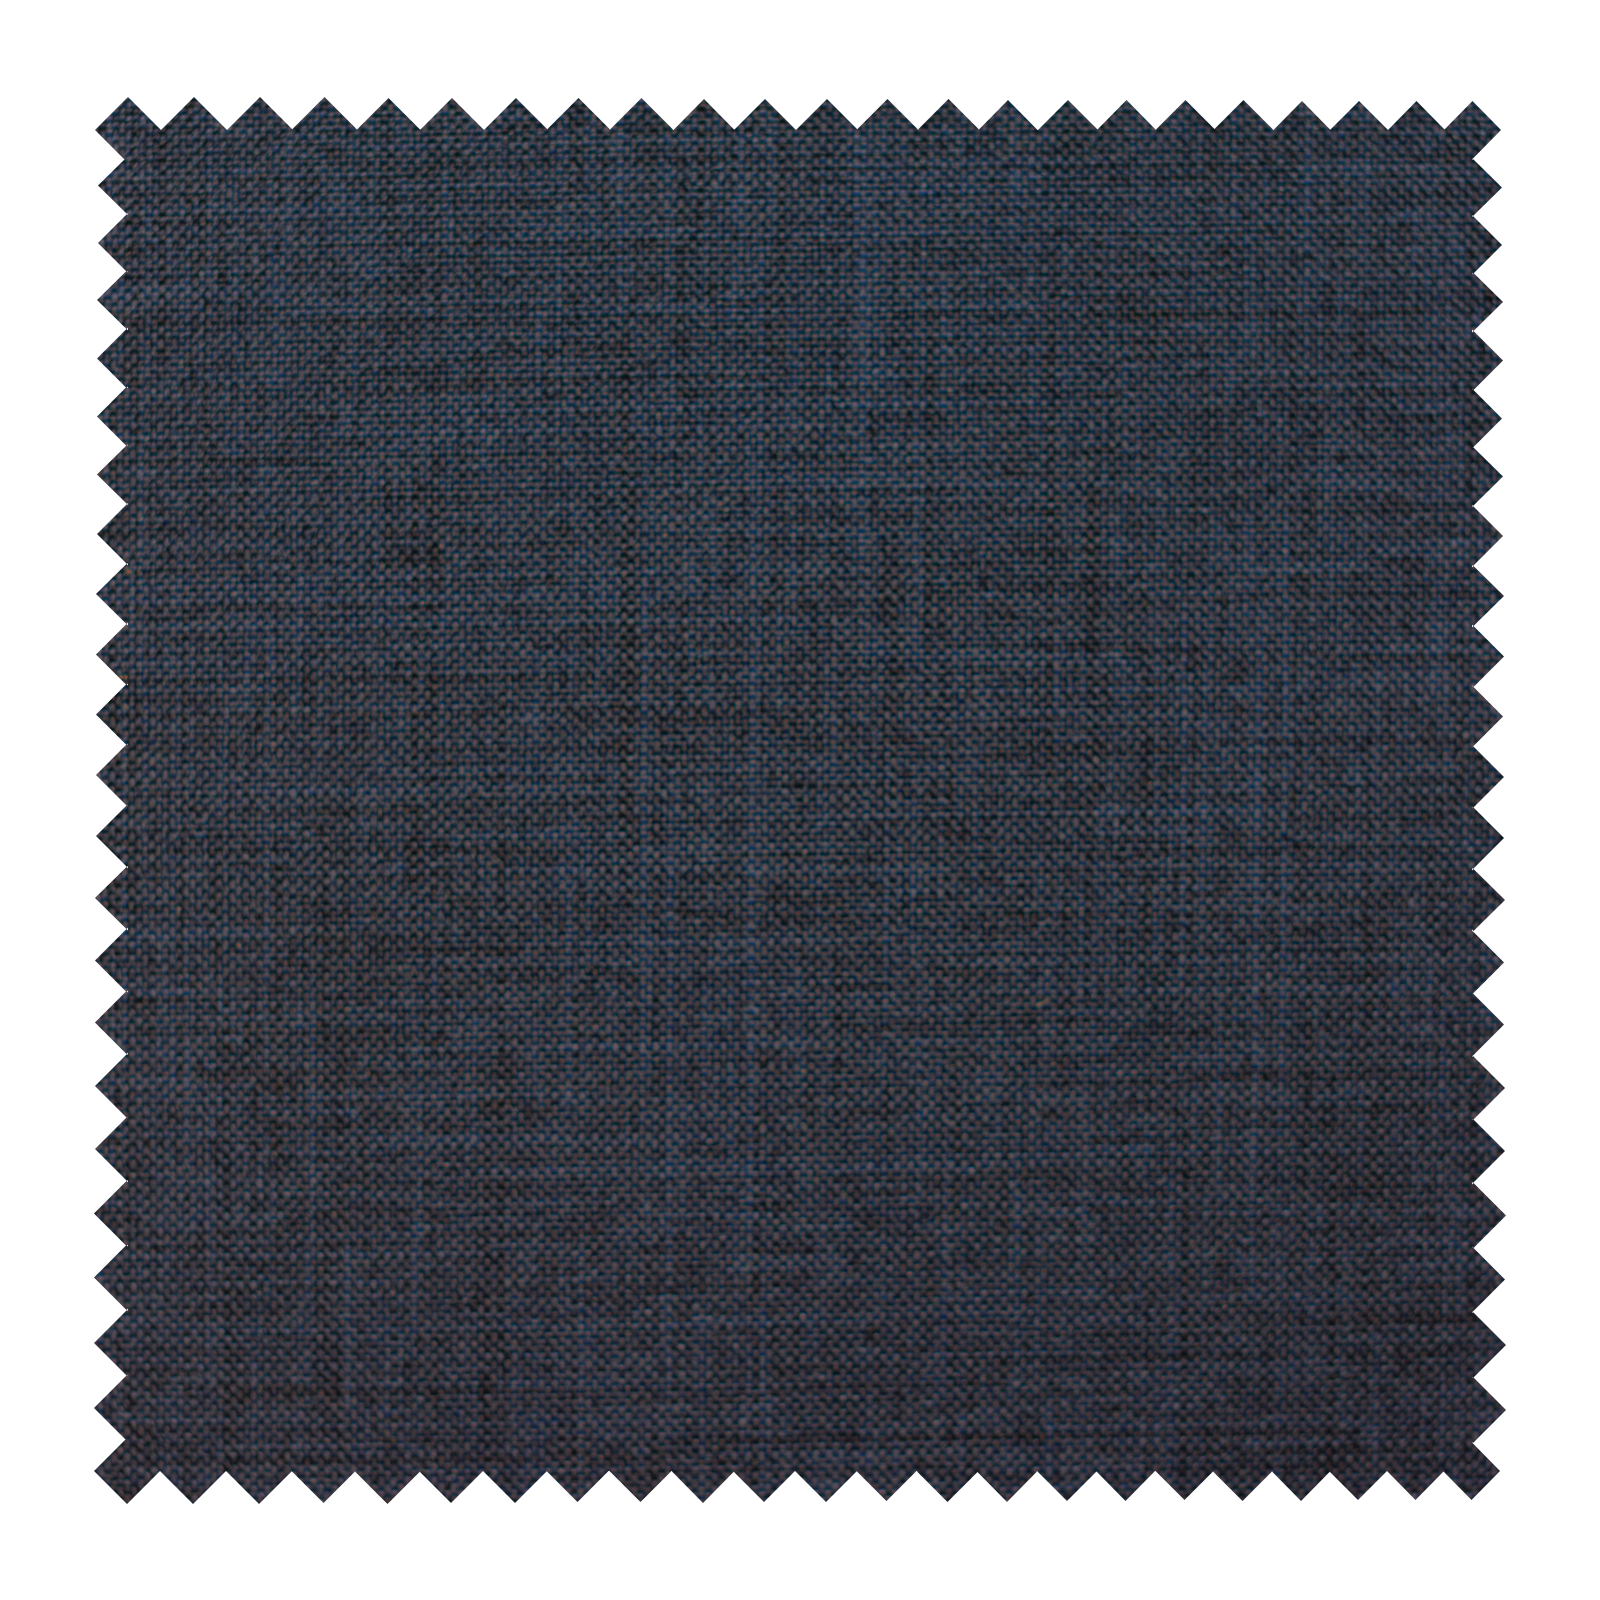 Fabric Navy Blue 01302